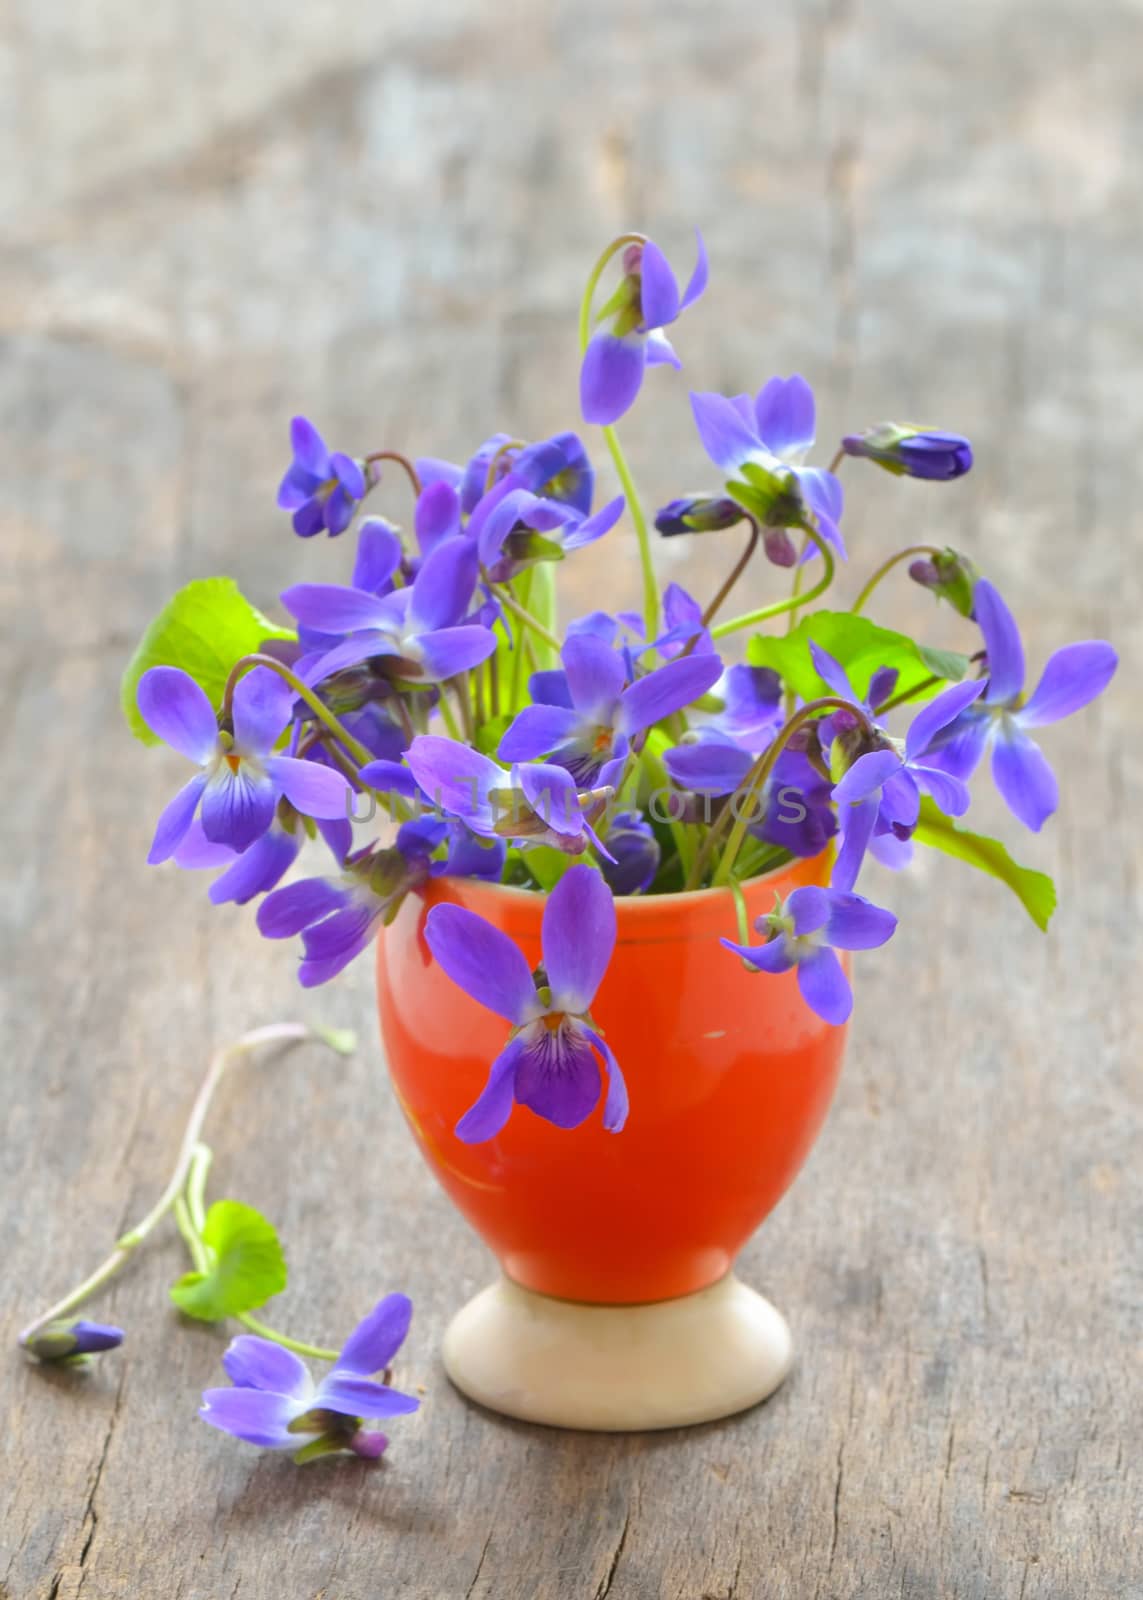 violets flowers (Viola odorata)  by mady70